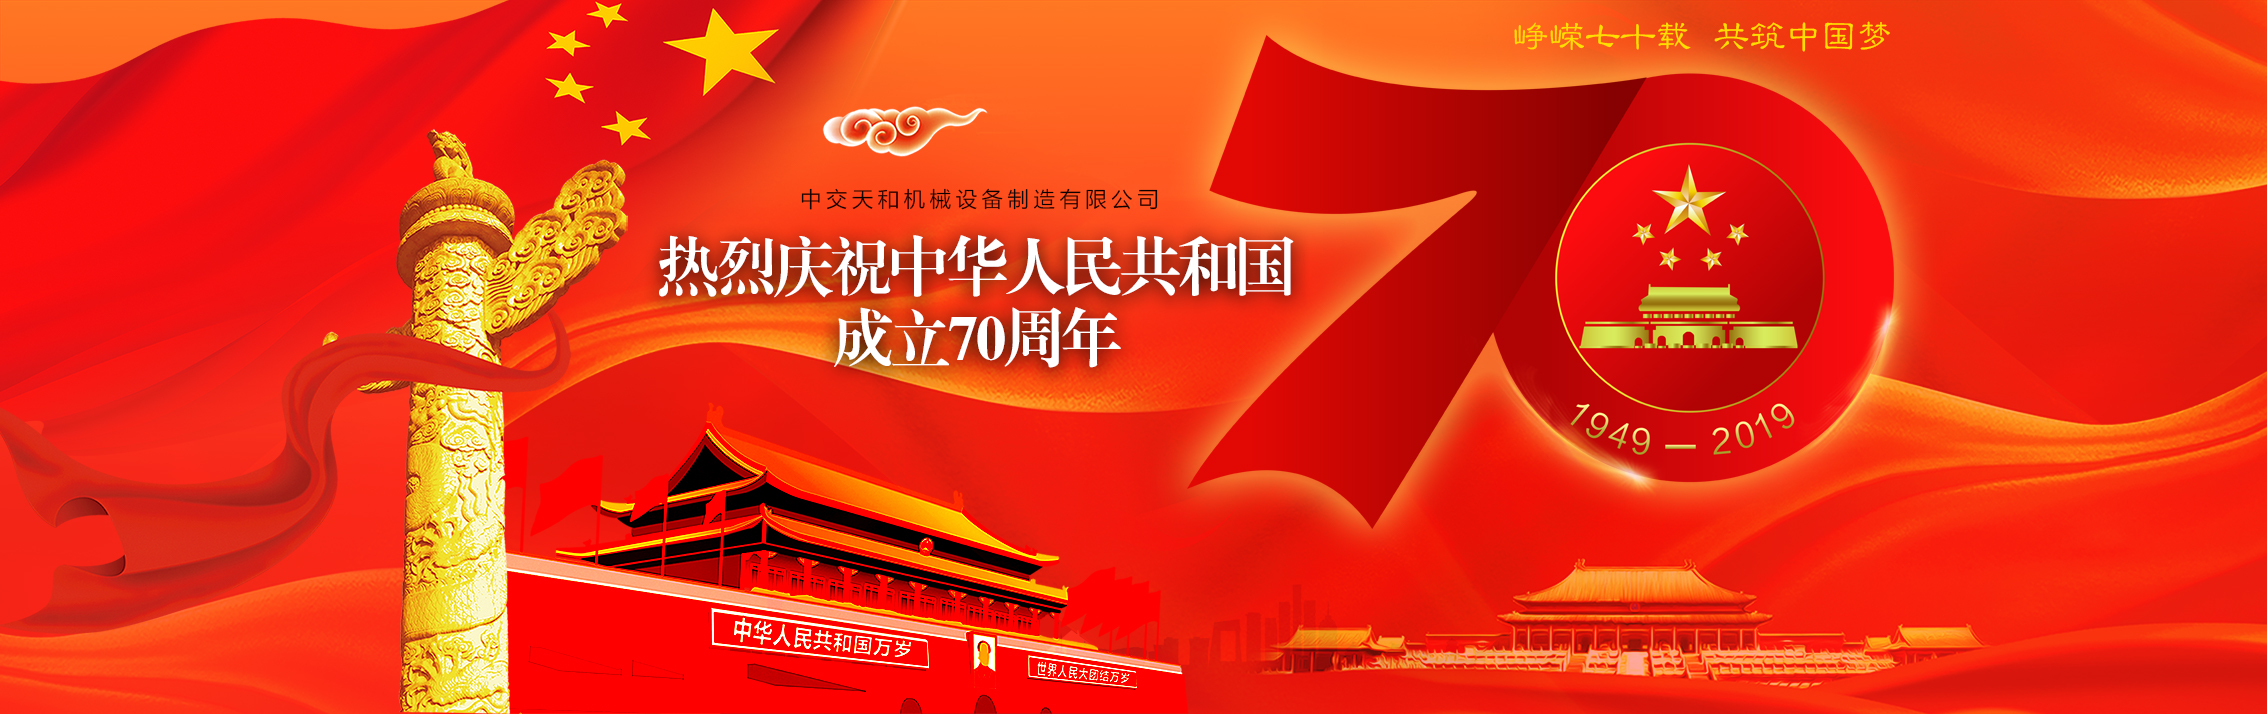 中交天和庆祝中华人民共和国成立70周年